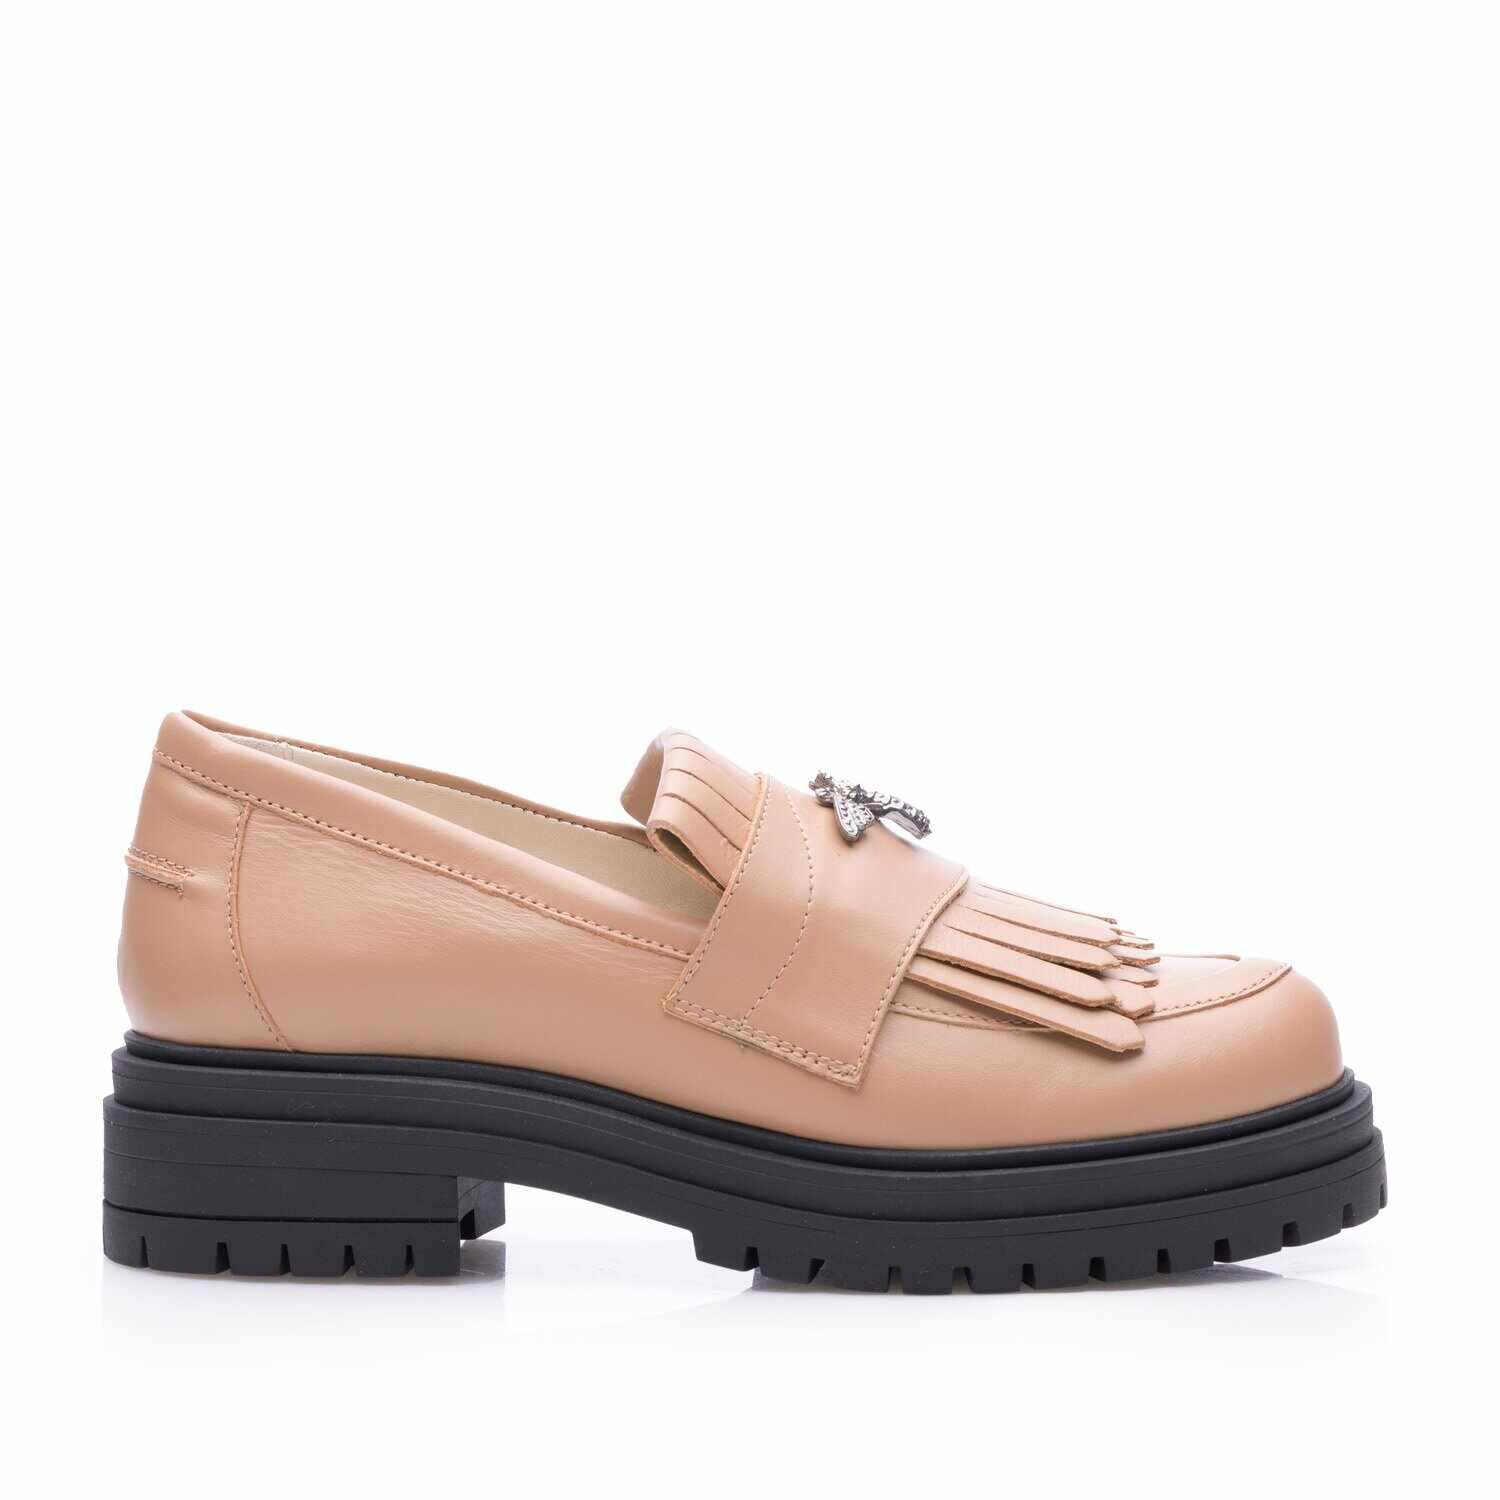 Pantofi casual damă din piele naturală, Leofex - 405 Cappuccino Box